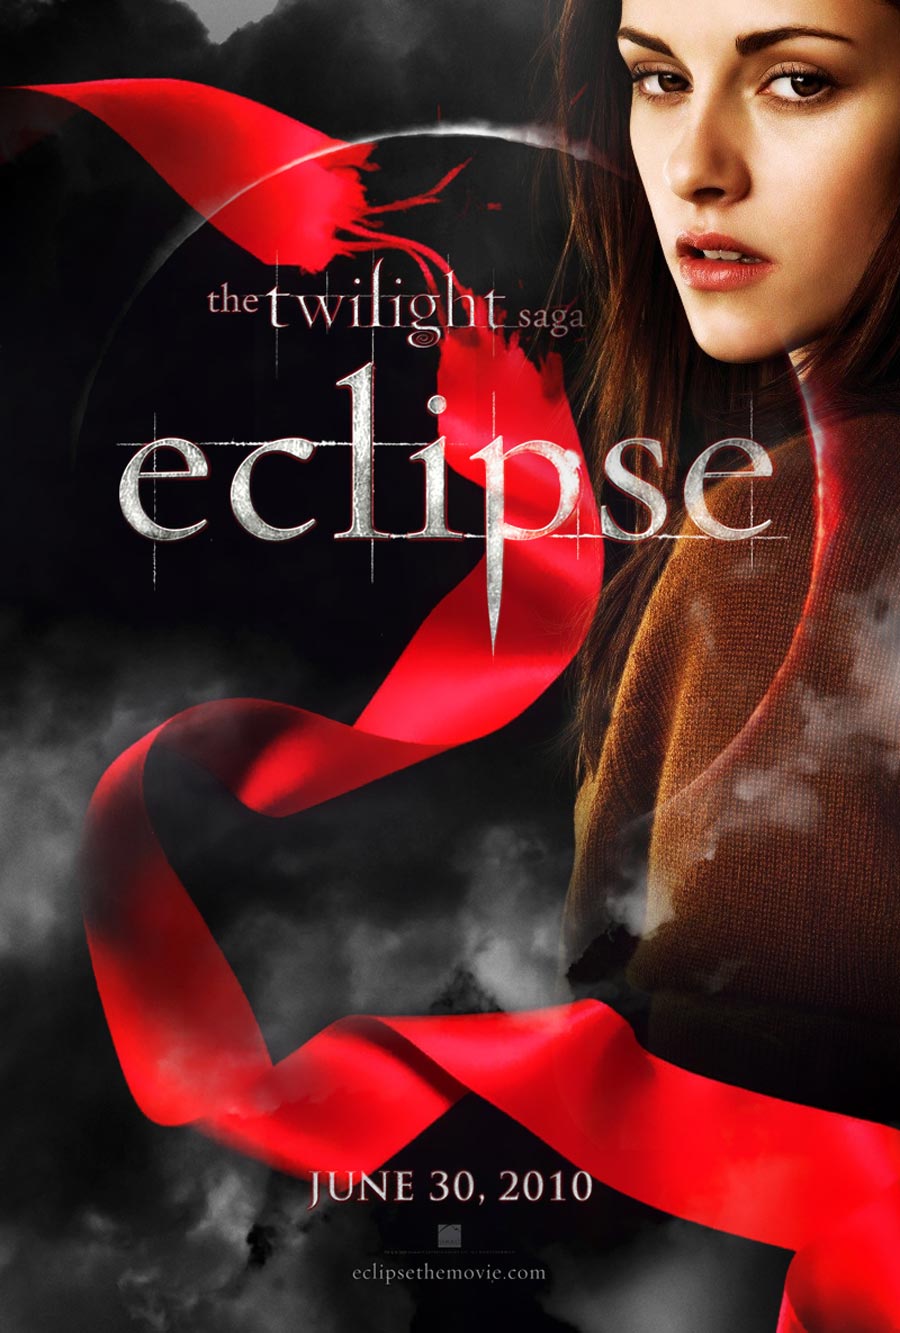 The Twilight Saga: Eclipse Posters, Kristen Stewart